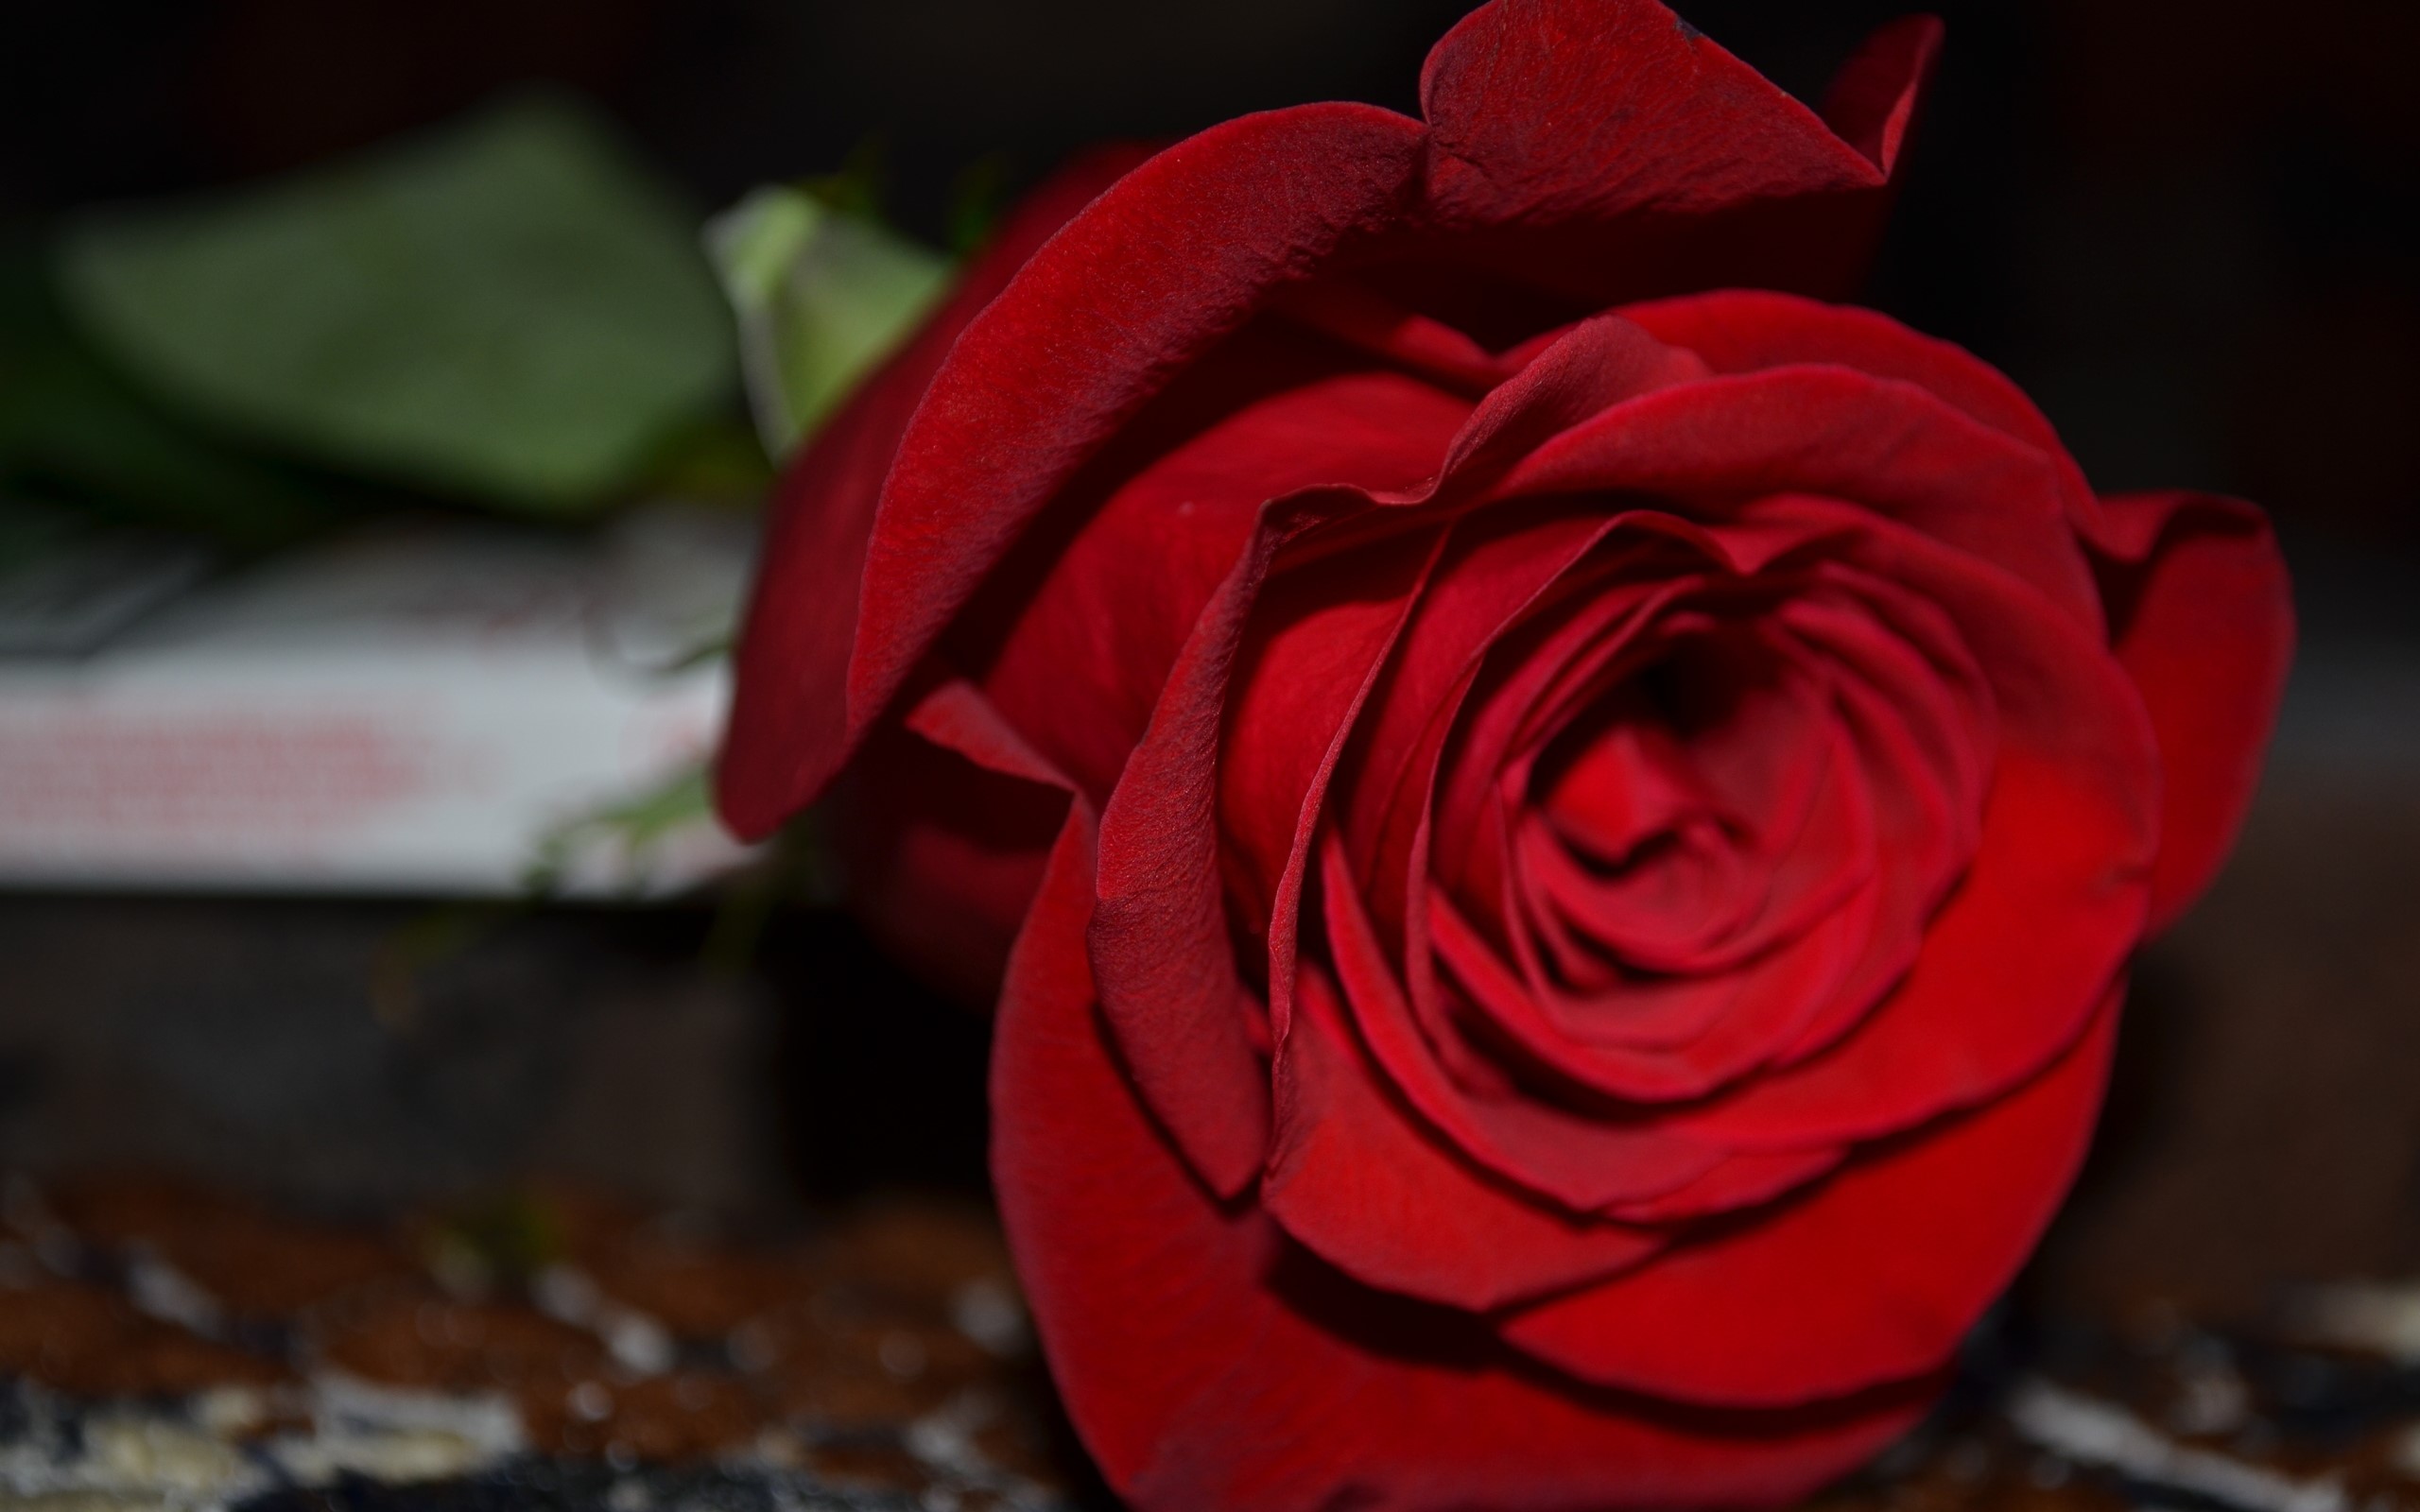 fond d'écran mawar merah,rouge,roses de jardin,rose,pétale,fleur